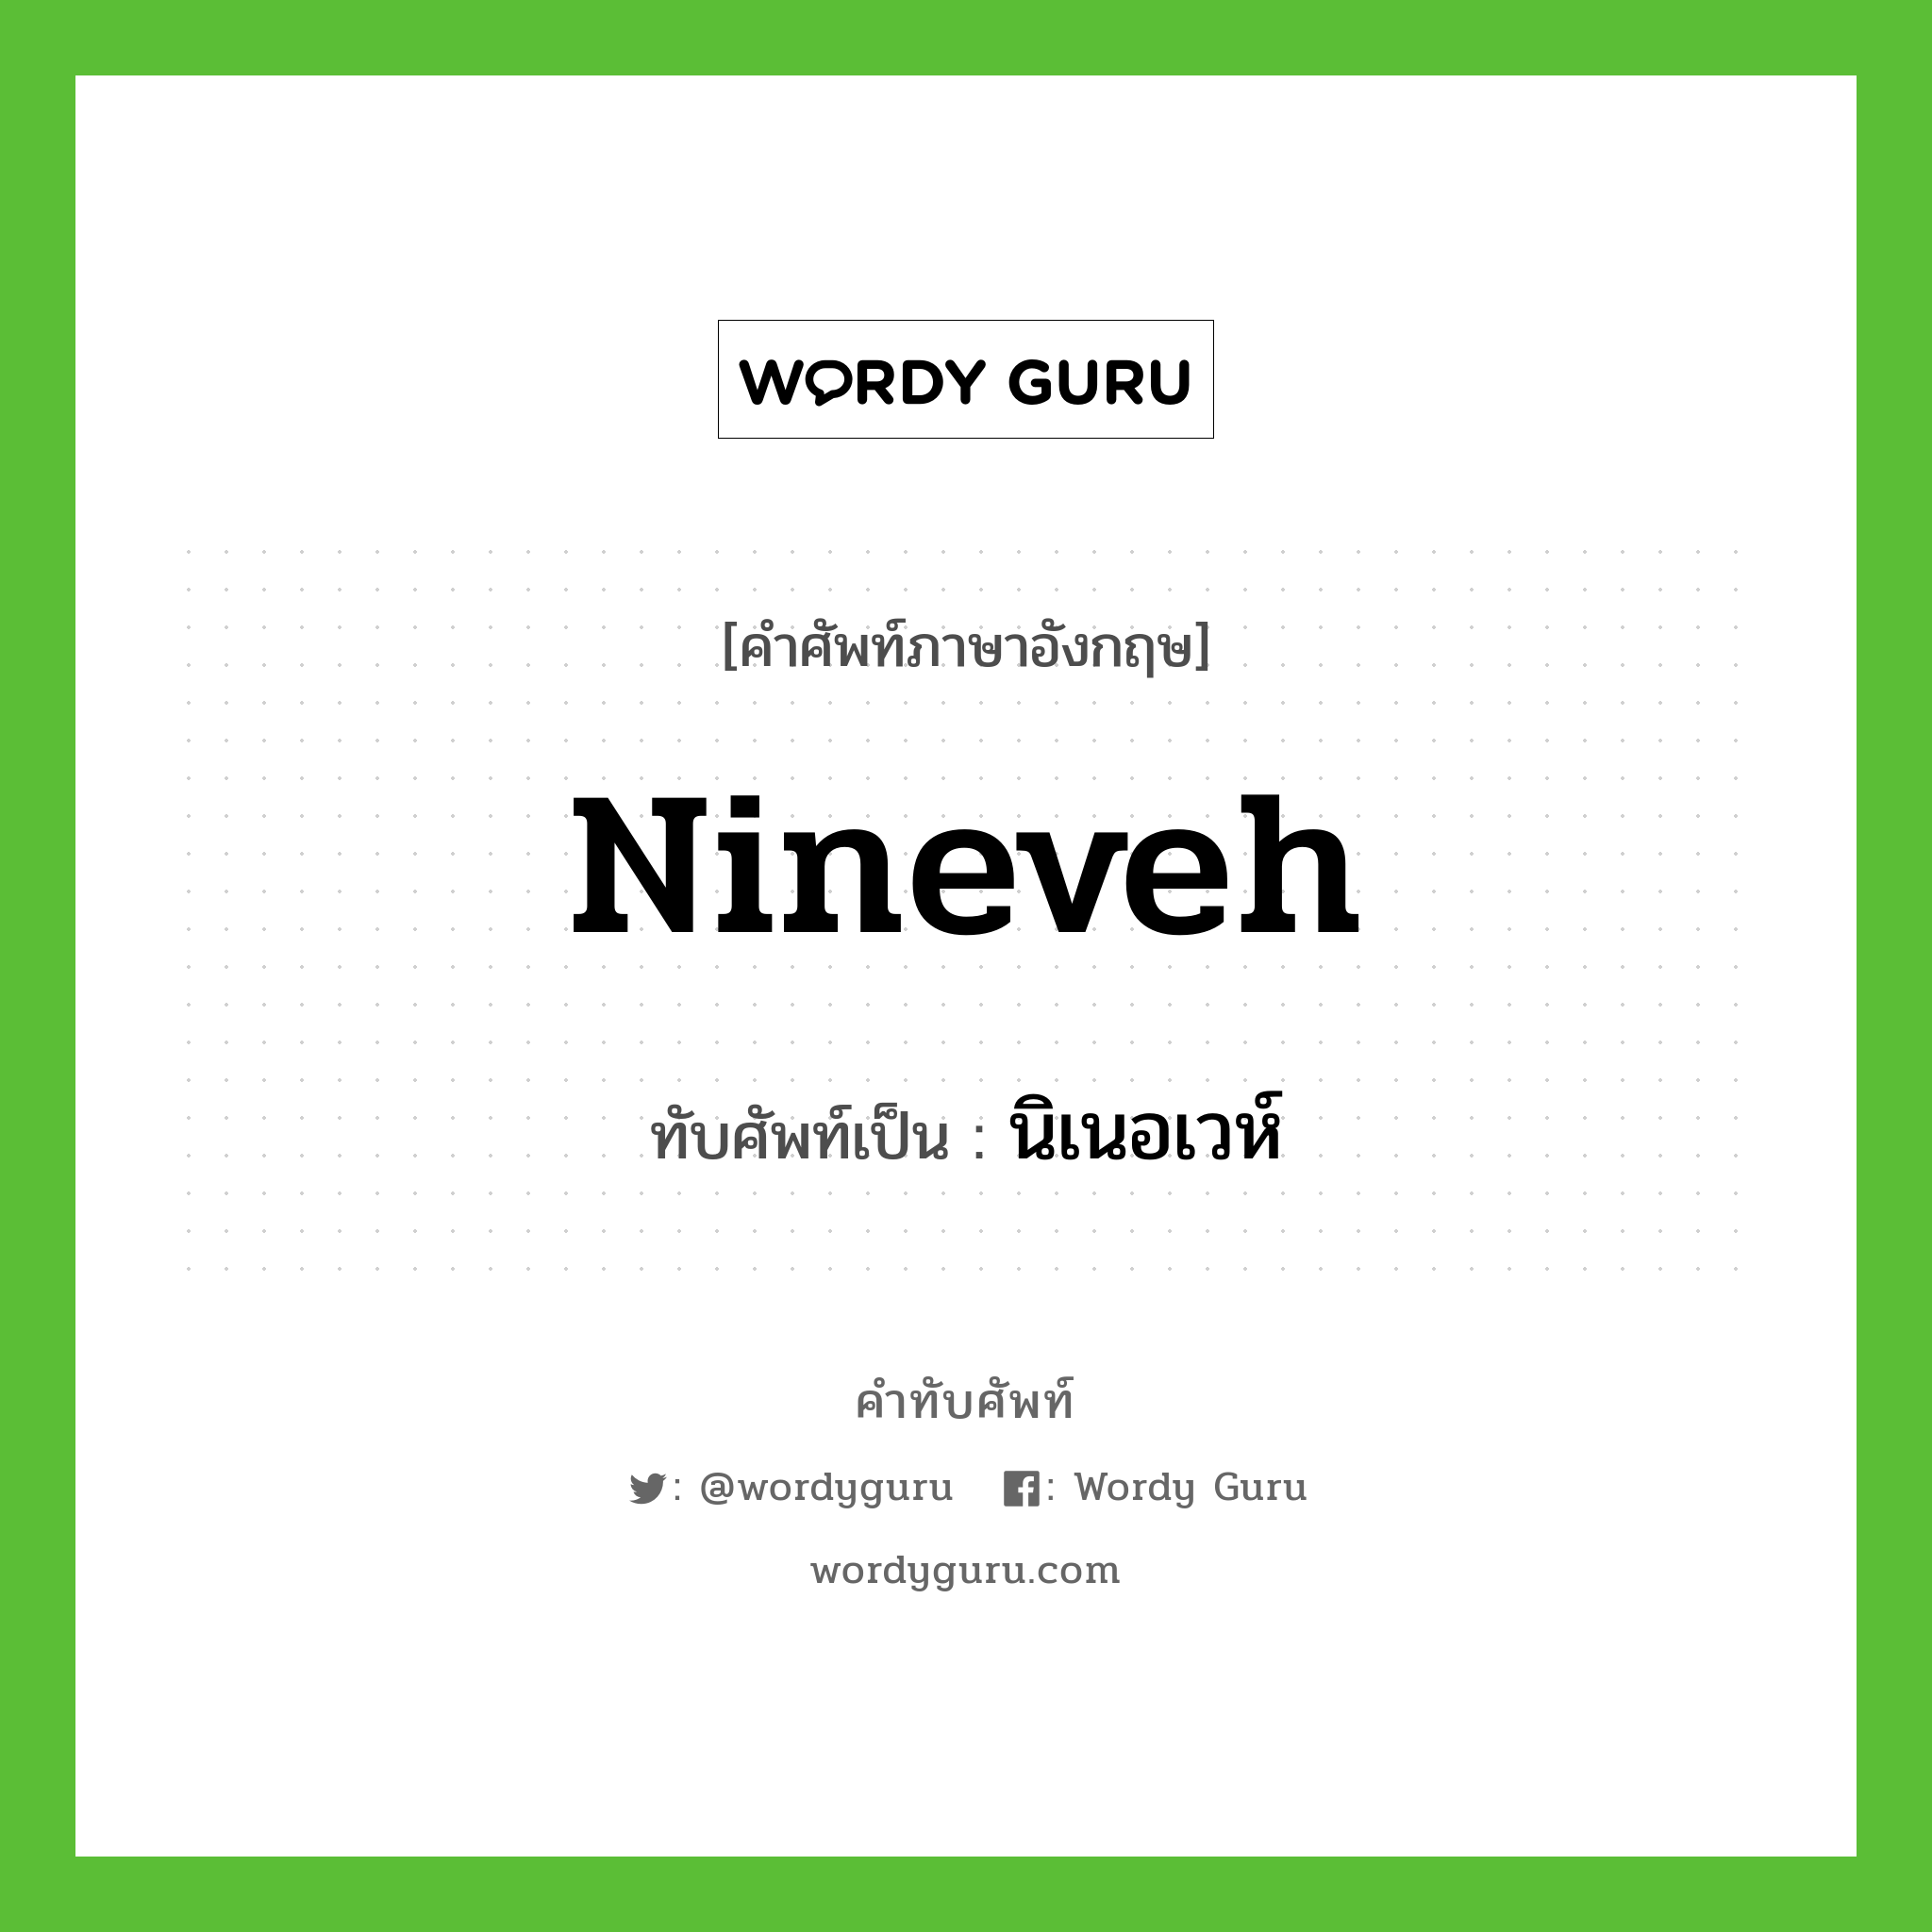 นิเนอเวห์ เขียนอย่างไร?, คำศัพท์ภาษาอังกฤษ นิเนอเวห์ ทับศัพท์เป็น Nineveh